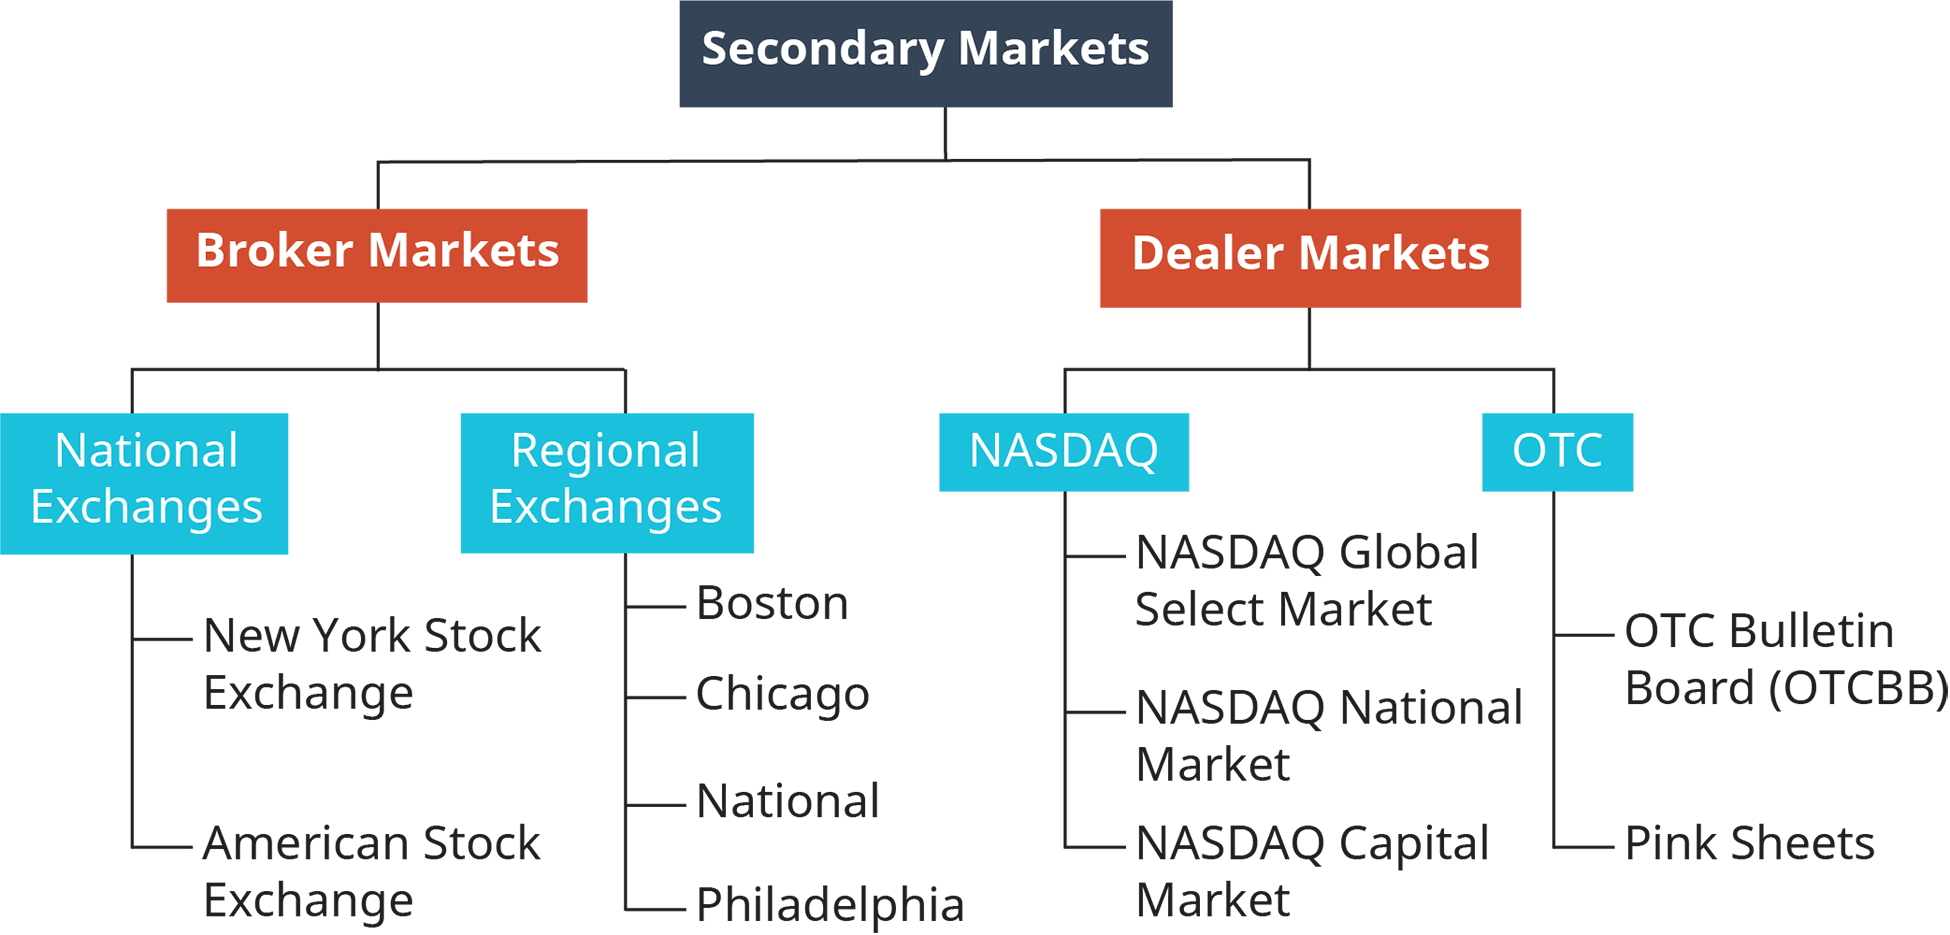 二级市场分为两个部分：经纪人市场和交易商市场。 经纪商市场分为两个部分：国家交易所和区域交易所。 国家交易所包括纽约证券交易所和美国证券交易所。 区域交易所包括波士顿、芝加哥、国家航空和费城。 交易商市场分为两个部分：纳斯达克和O T C。纳斯达克包括纳斯达克全球精选市场、纳斯达克全国市场和纳斯达克资本市场。 O T C 包括名为 O T C B B 的 O T C 公告板和粉色床单。